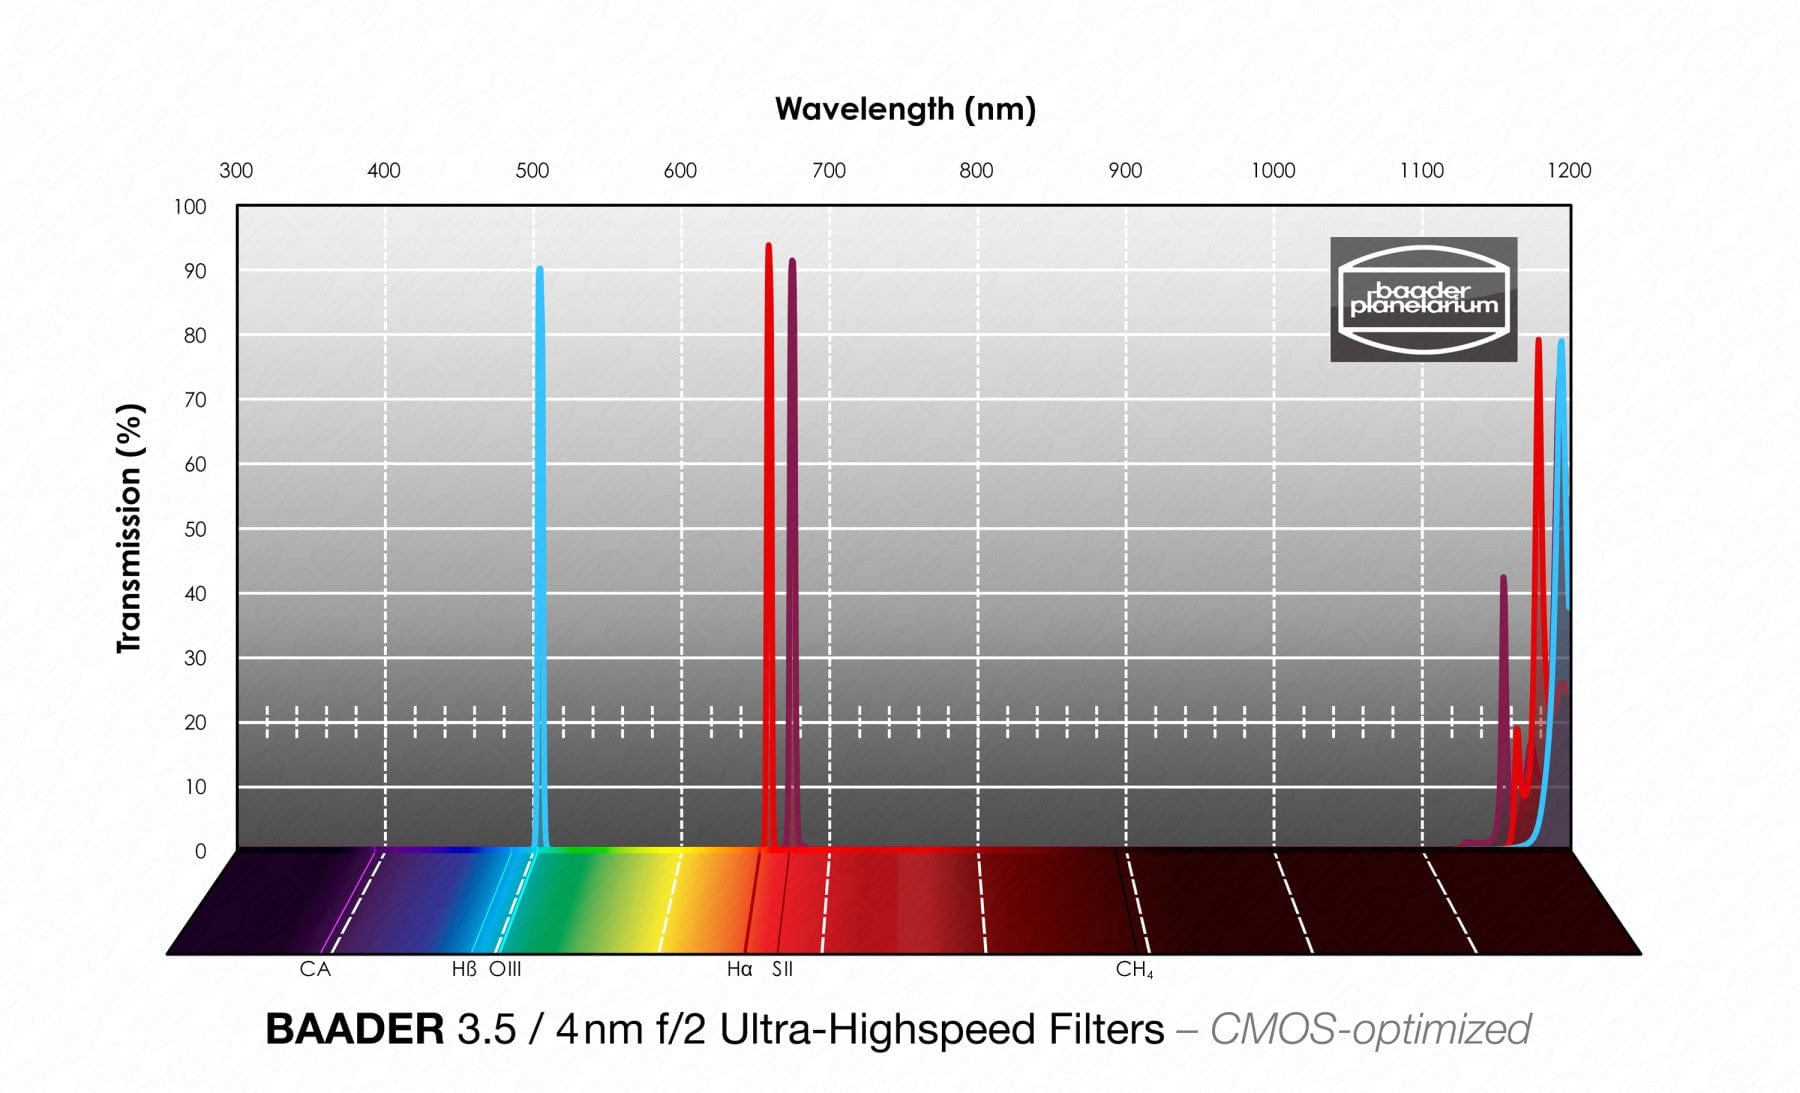 Baader Planetarium Accessory Baader 3.5 / 4nm f/2 Ultra-Highspeed-Filterset 1¼" – CMOS-optimized (H-alpha / O-III / S-II)